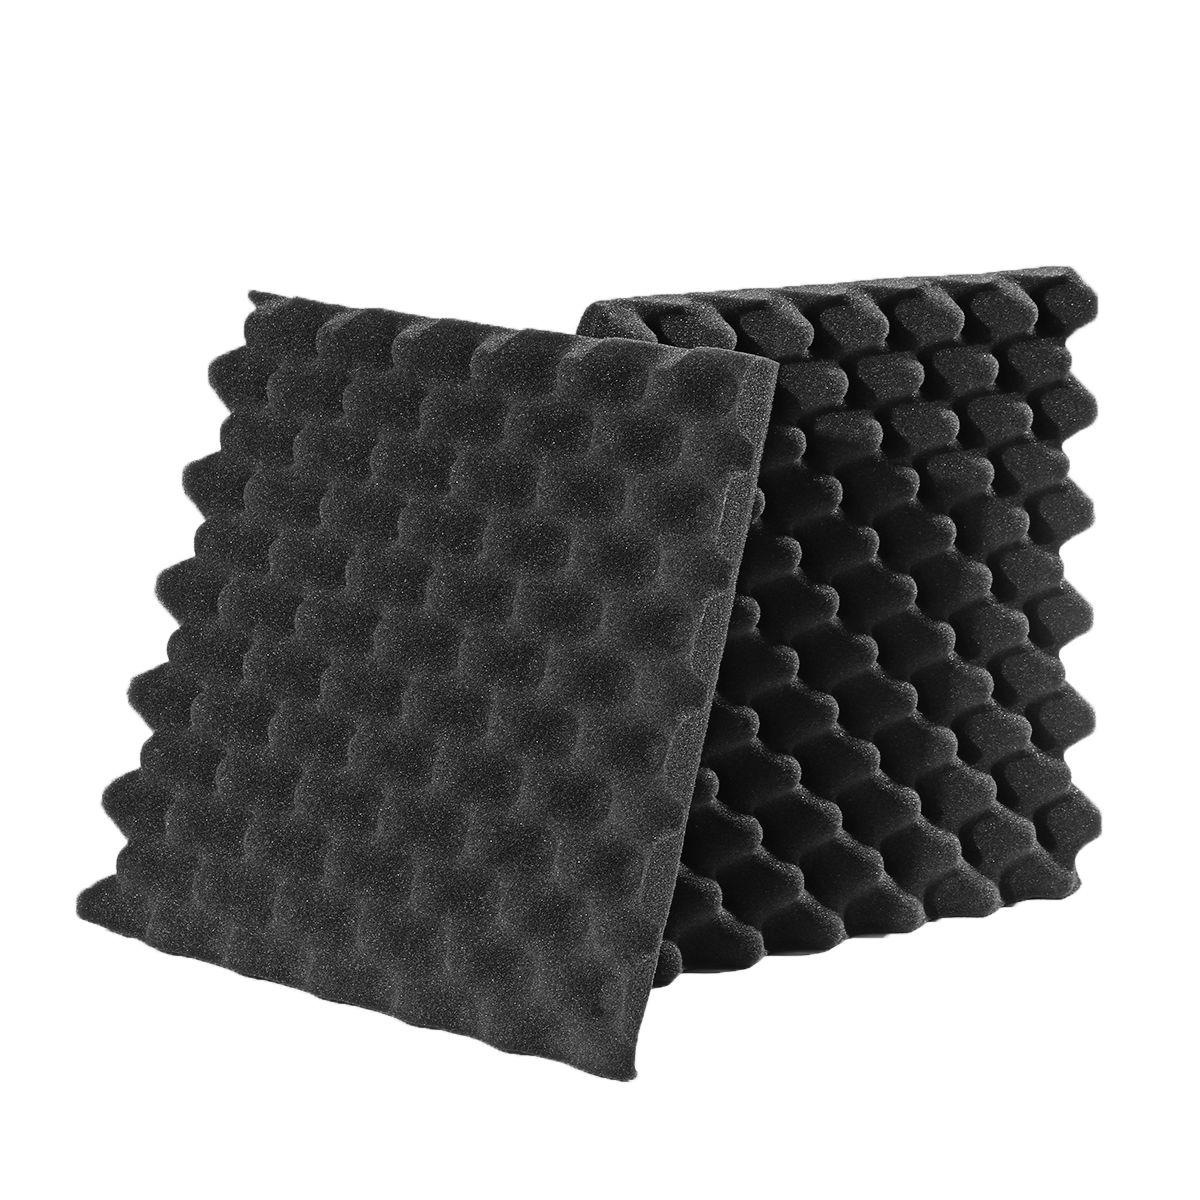 12PcsSet-Studio-Acoustic-Foam-Panels-Tile-Sound-Insulation-Proofing-30x30x4cm-1731451